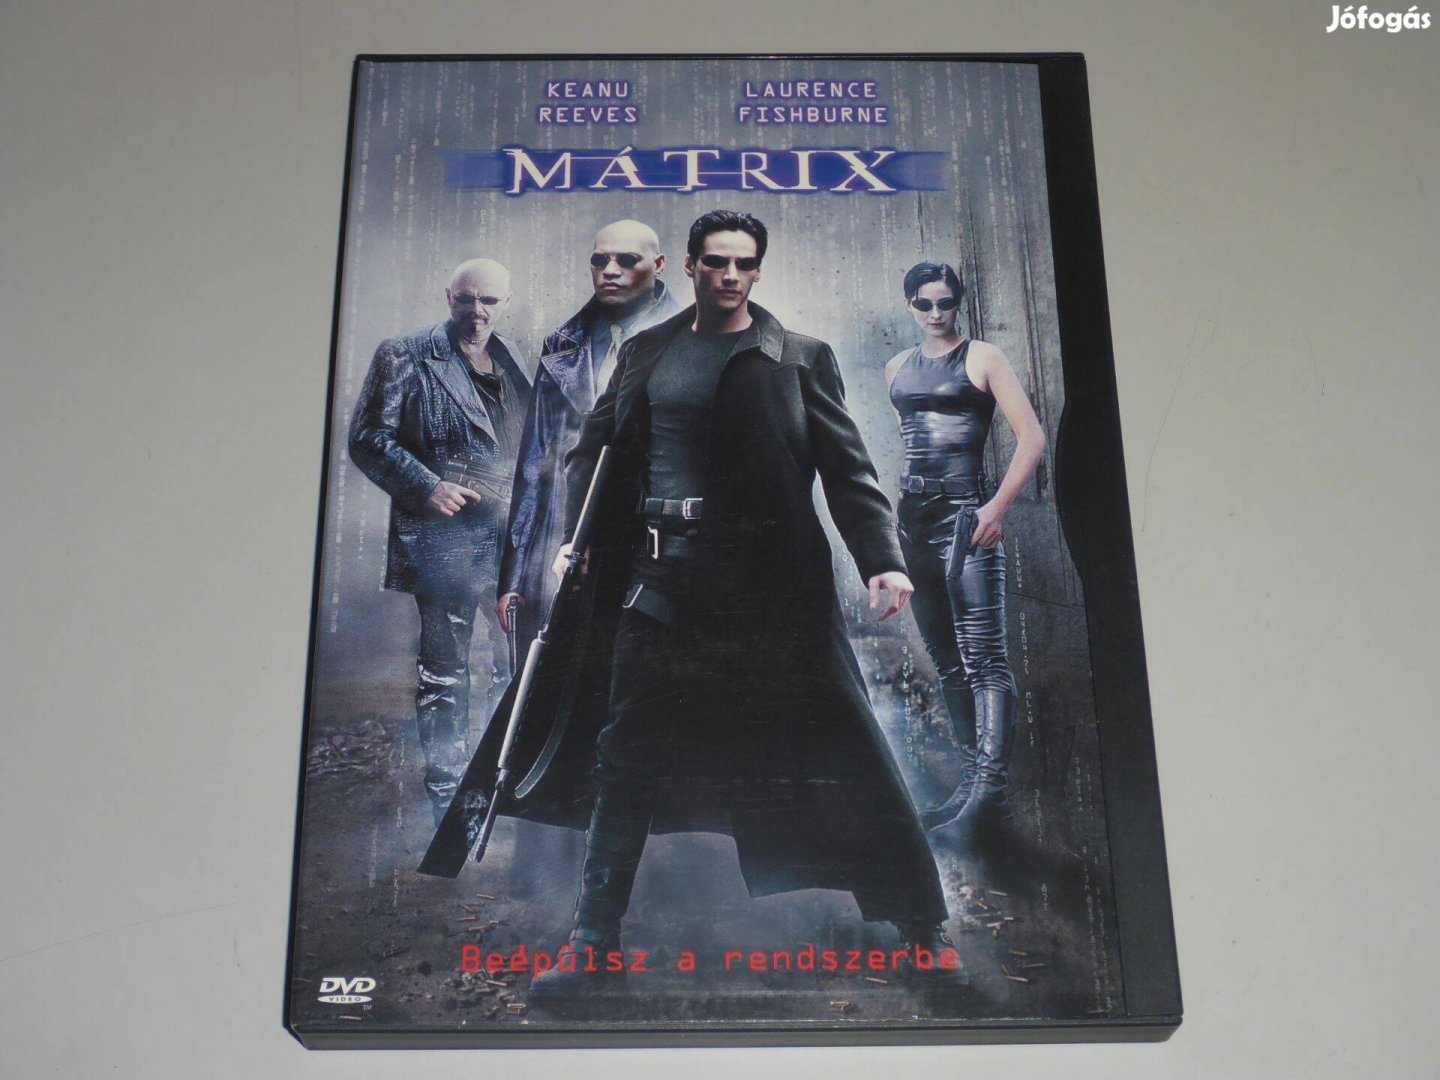 Mátrix DVD film "